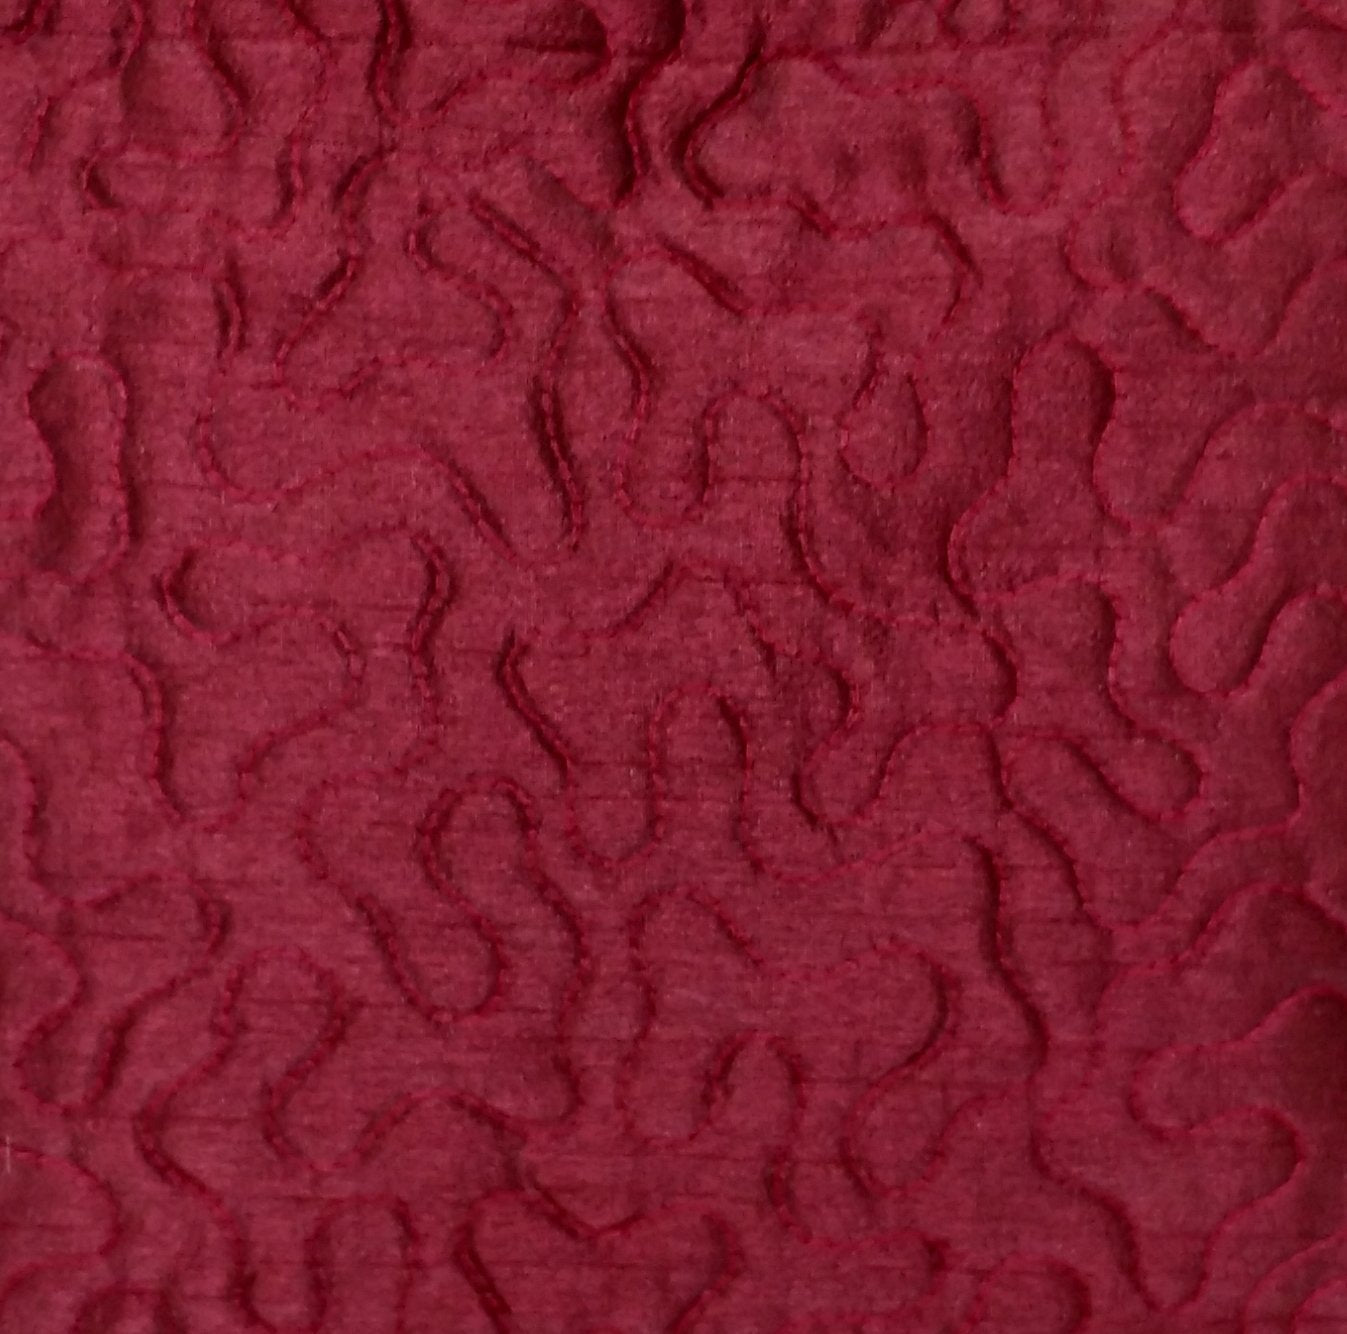 Silk maroon16*16 inches Cushion Cover 1 pc